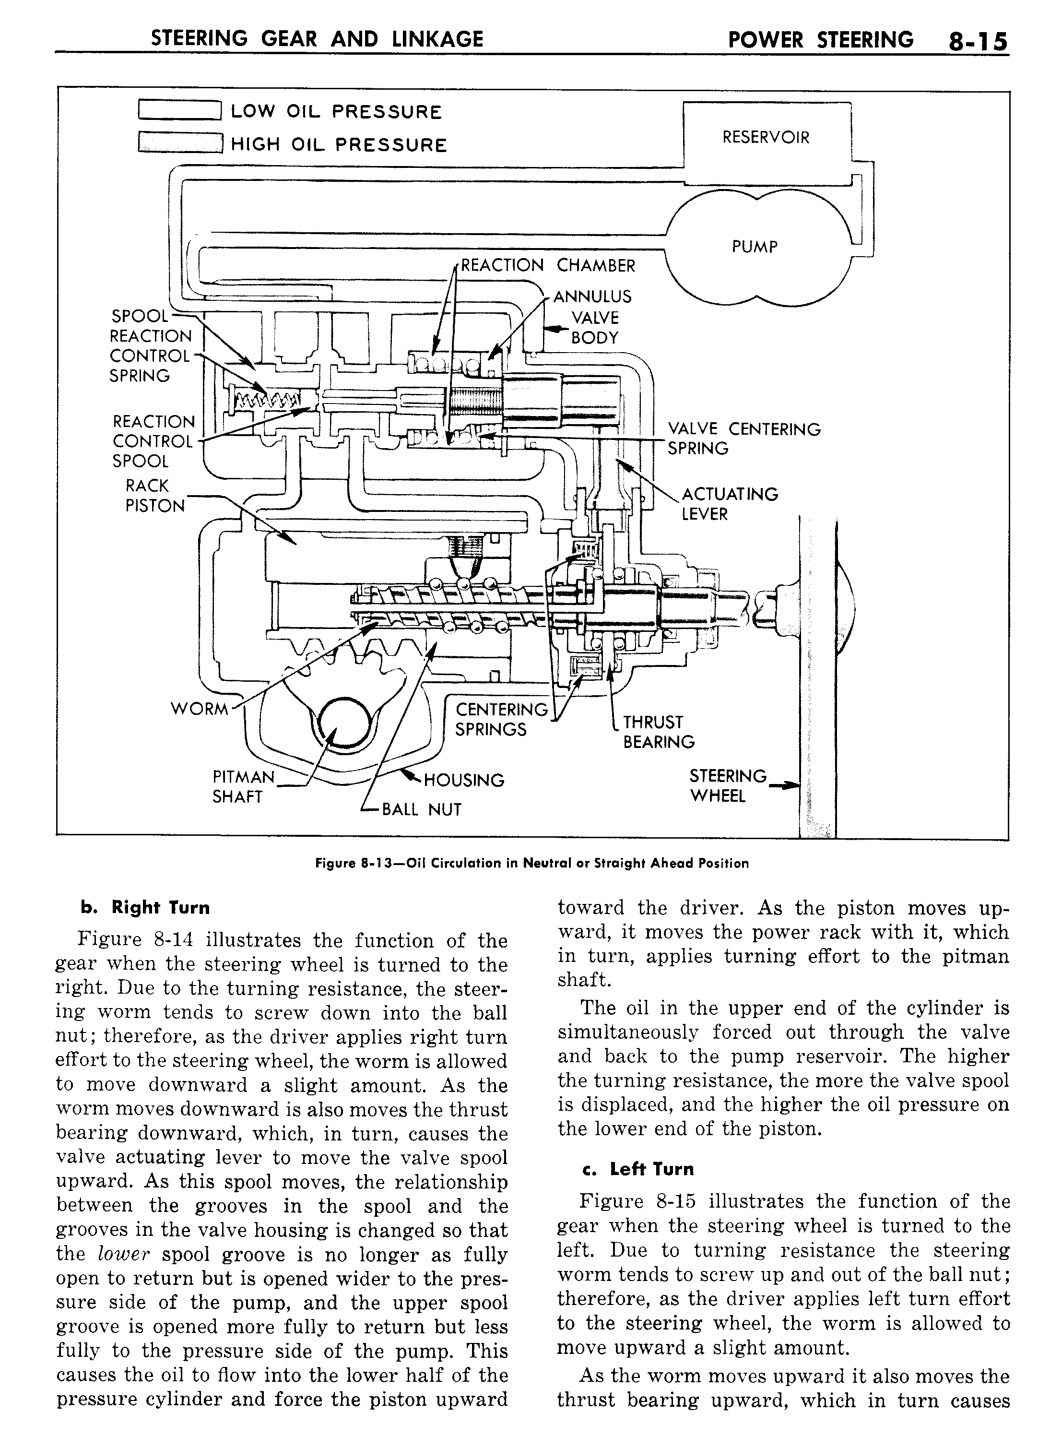 n_09 1957 Buick Shop Manual - Steering-015-015.jpg